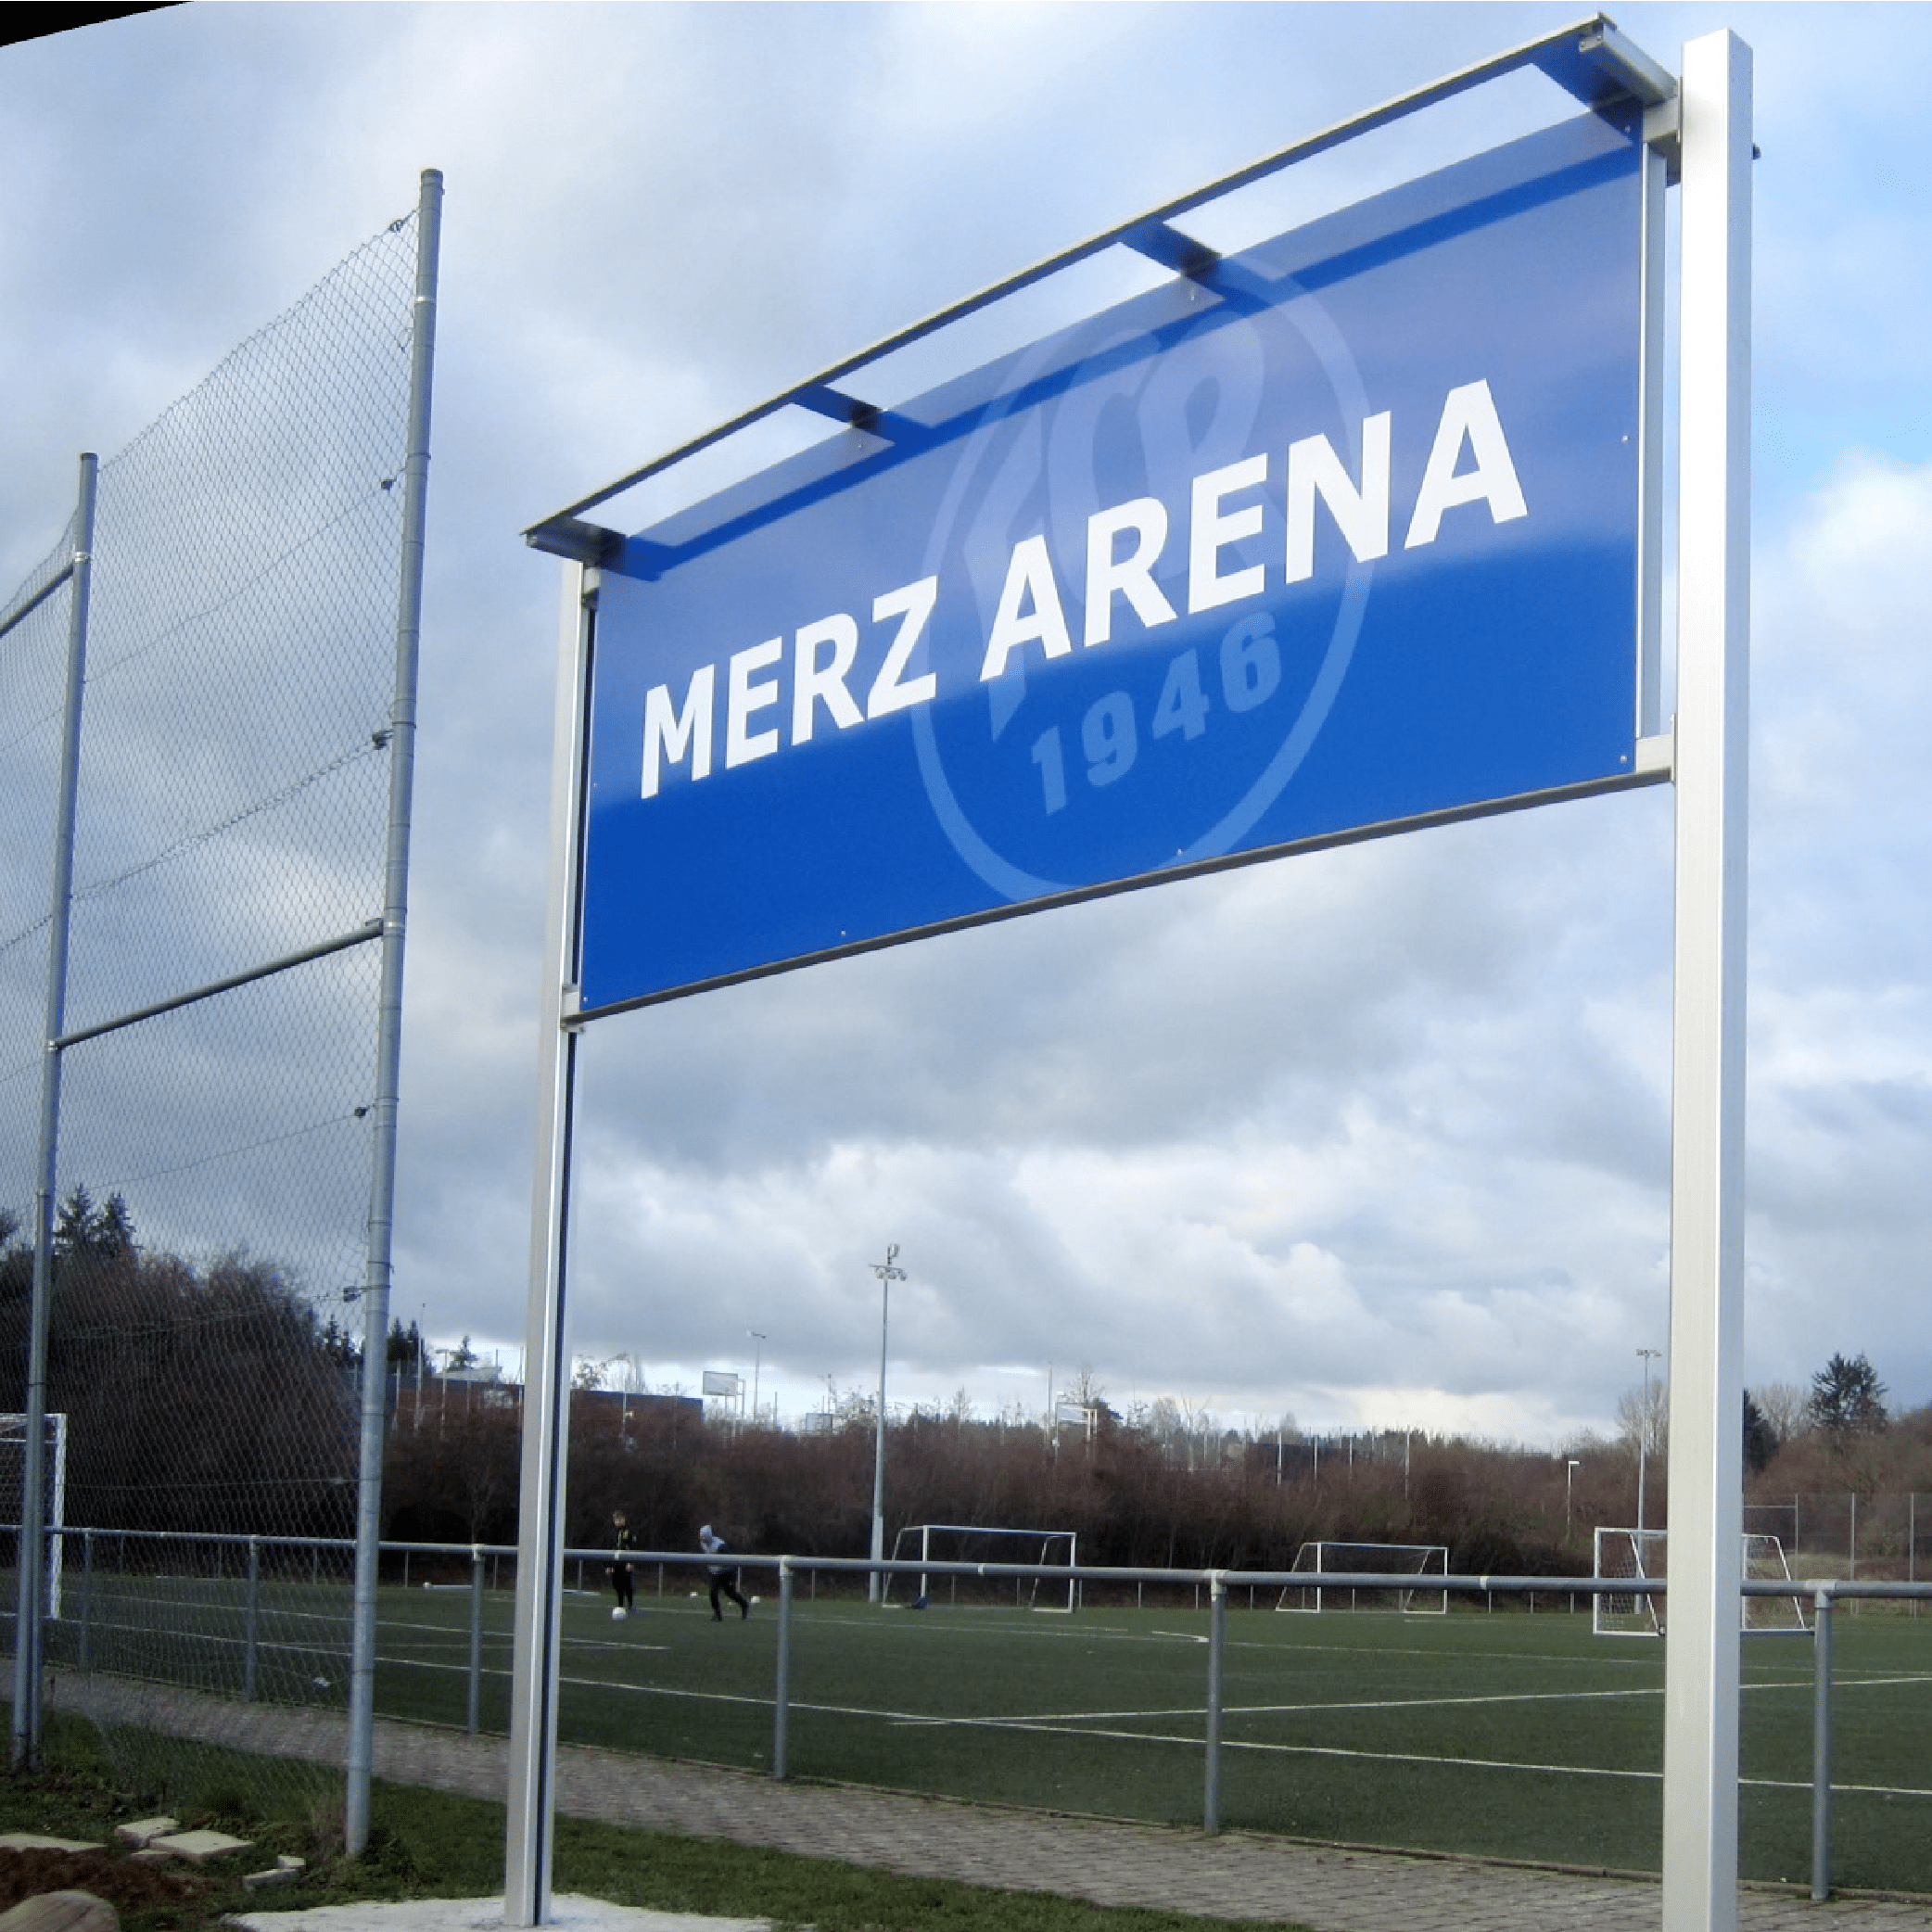 Merz Arena